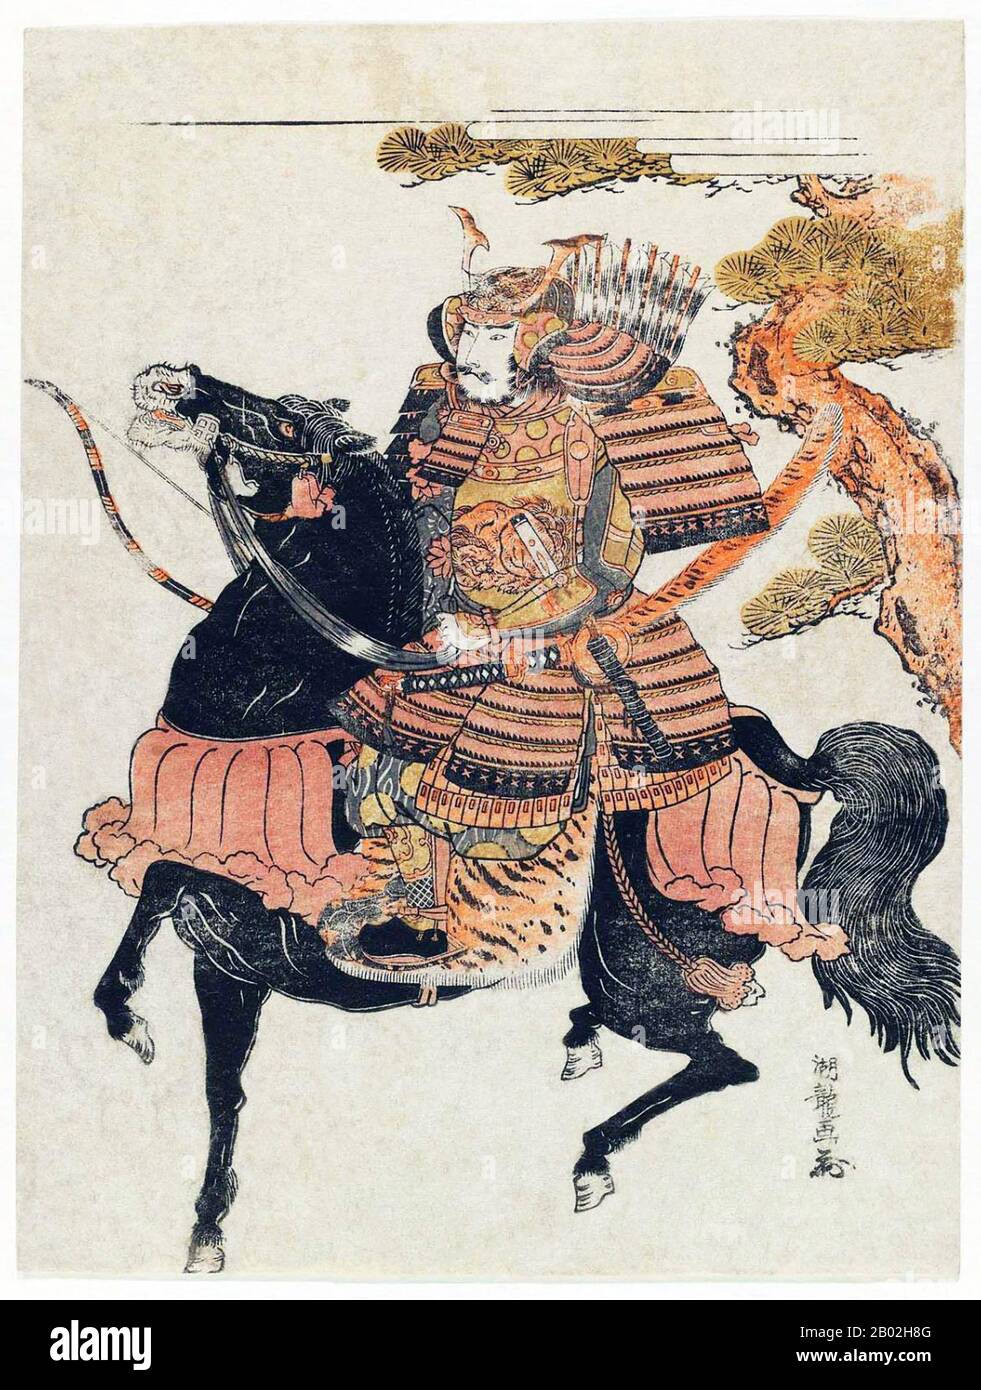 Minamoto no Yoshitsune (源 義経, 1159 – 15 juin 1189) était un général du clan Minamoto du Japon à la fin de la période Heian et au début de la période Kamakura. Yoshitsune était le neuvième fils de Minamoto no Yoshitomo, et le troisième et dernier fils et enfant que Yoshitomo serait père de Tokiwa Gozen. Le frère aîné de Yoshitsune, Minamoto no Yoritomo (le troisième fils de Yoshitomo), fonde le shogunat de Kamakura. Le nom de Yoshitsune dans l'enfance était Ushiwakamaru (牛若丸). Il est considéré comme l'un des plus grands et des plus populaires guerriers de son époque, et l'un des plus célèbres combattants samouraï dans l'histoire du Japon. Isoda Banque D'Images